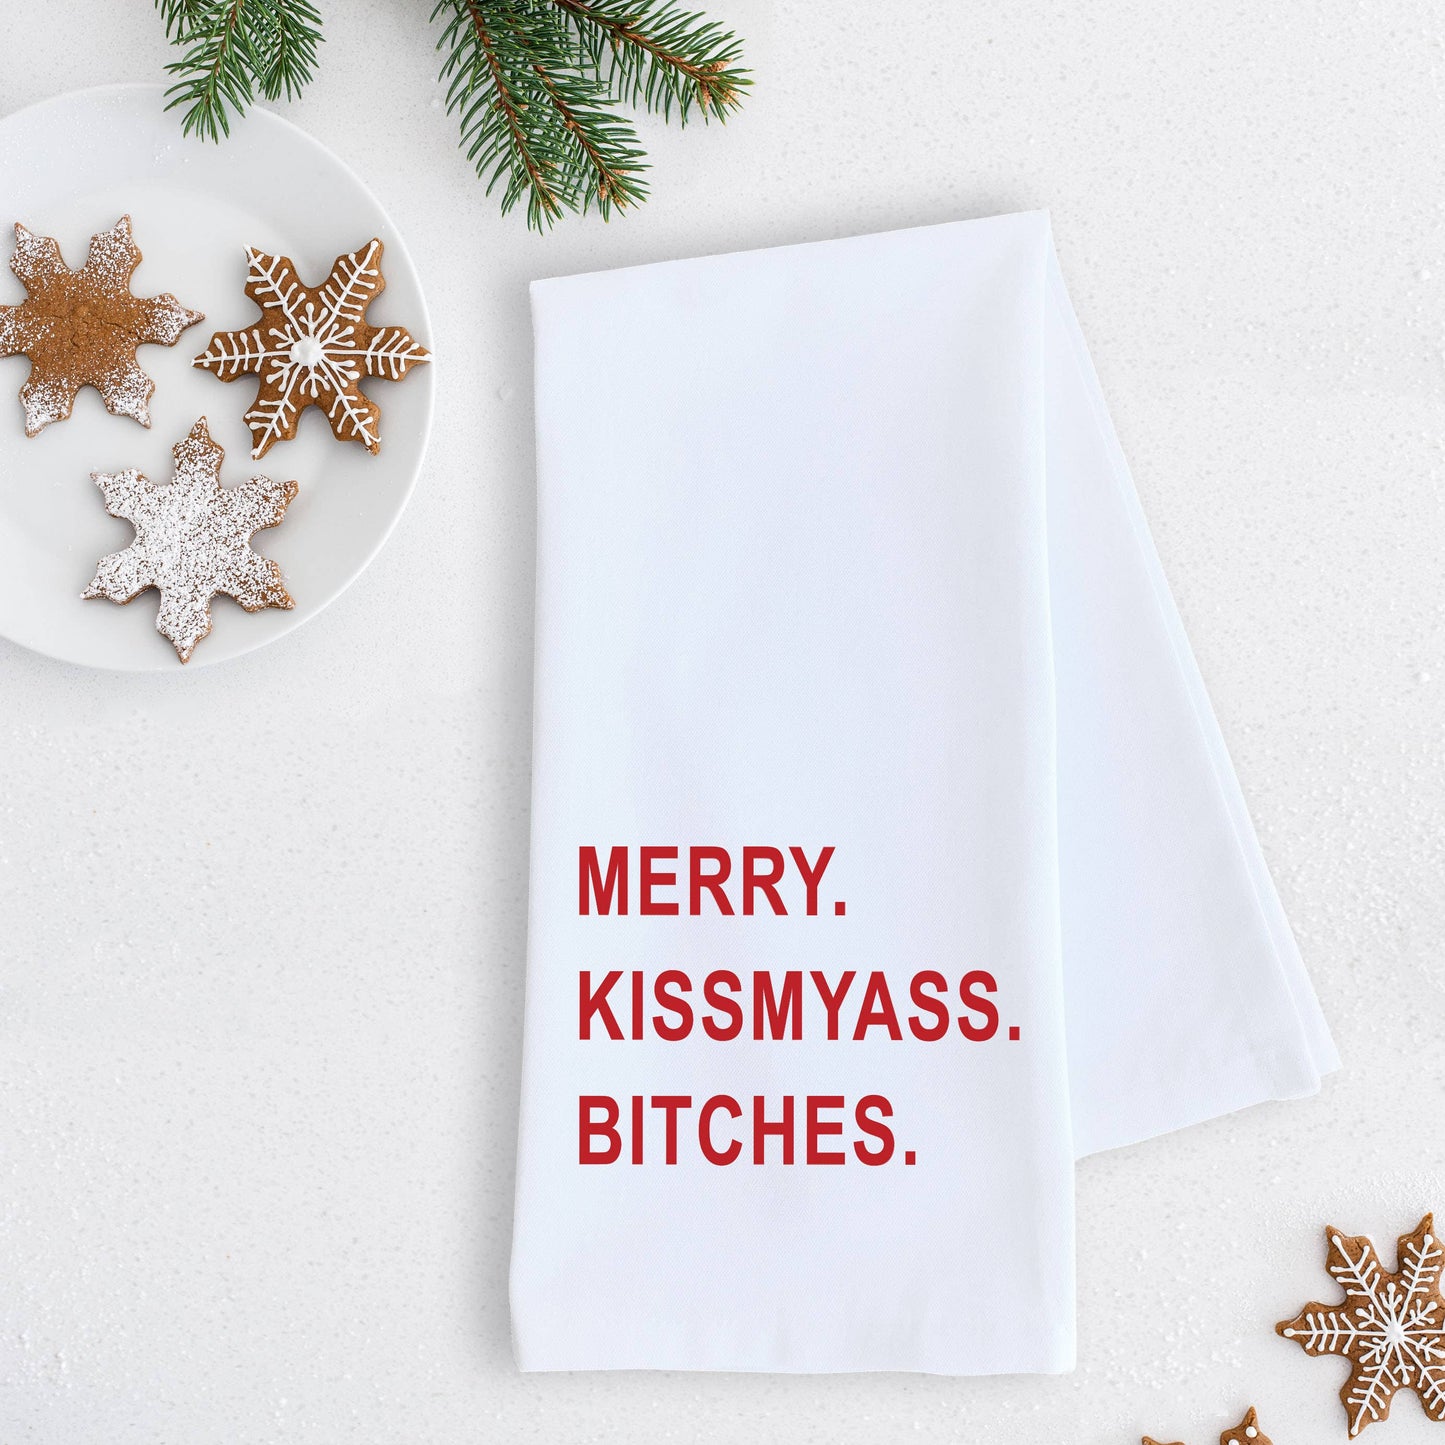 Merry. Kissmyass. Bitches. - Tea Towel - Holiday